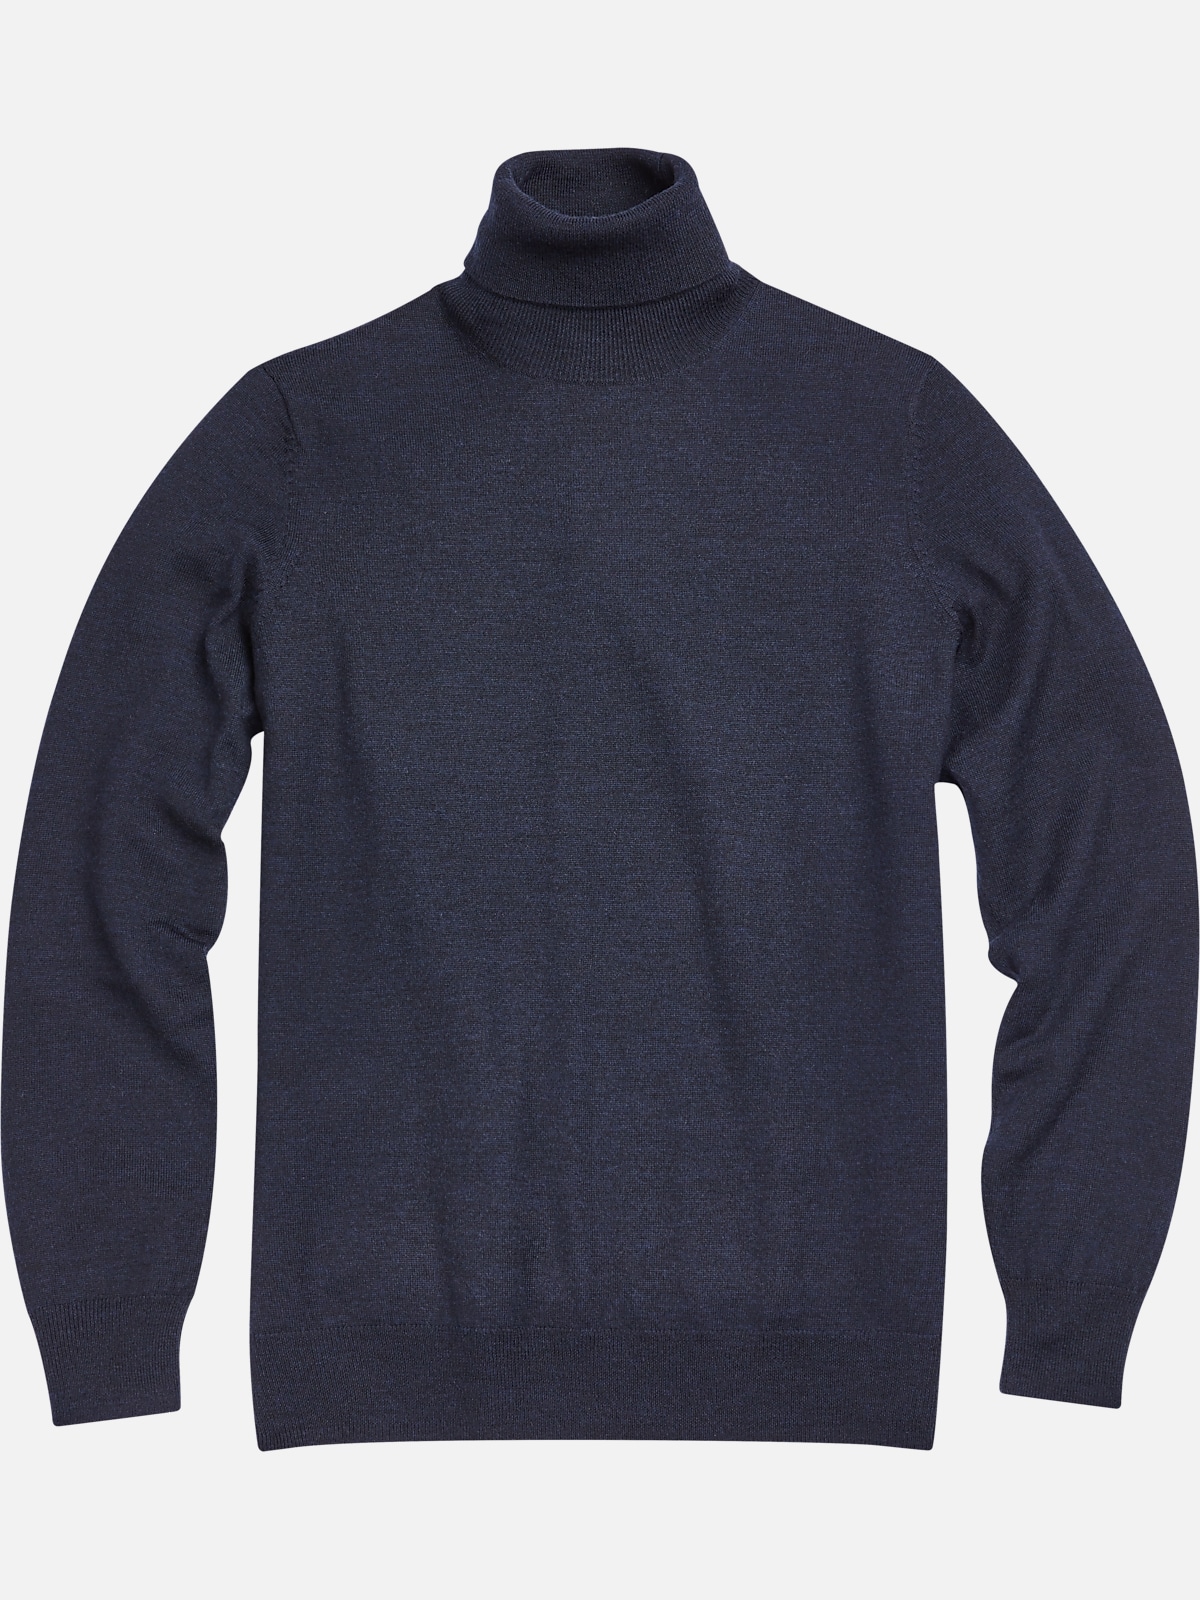 Jos. A Bank Traveler Modern Fit Merino Wool Turtleneck Sweater